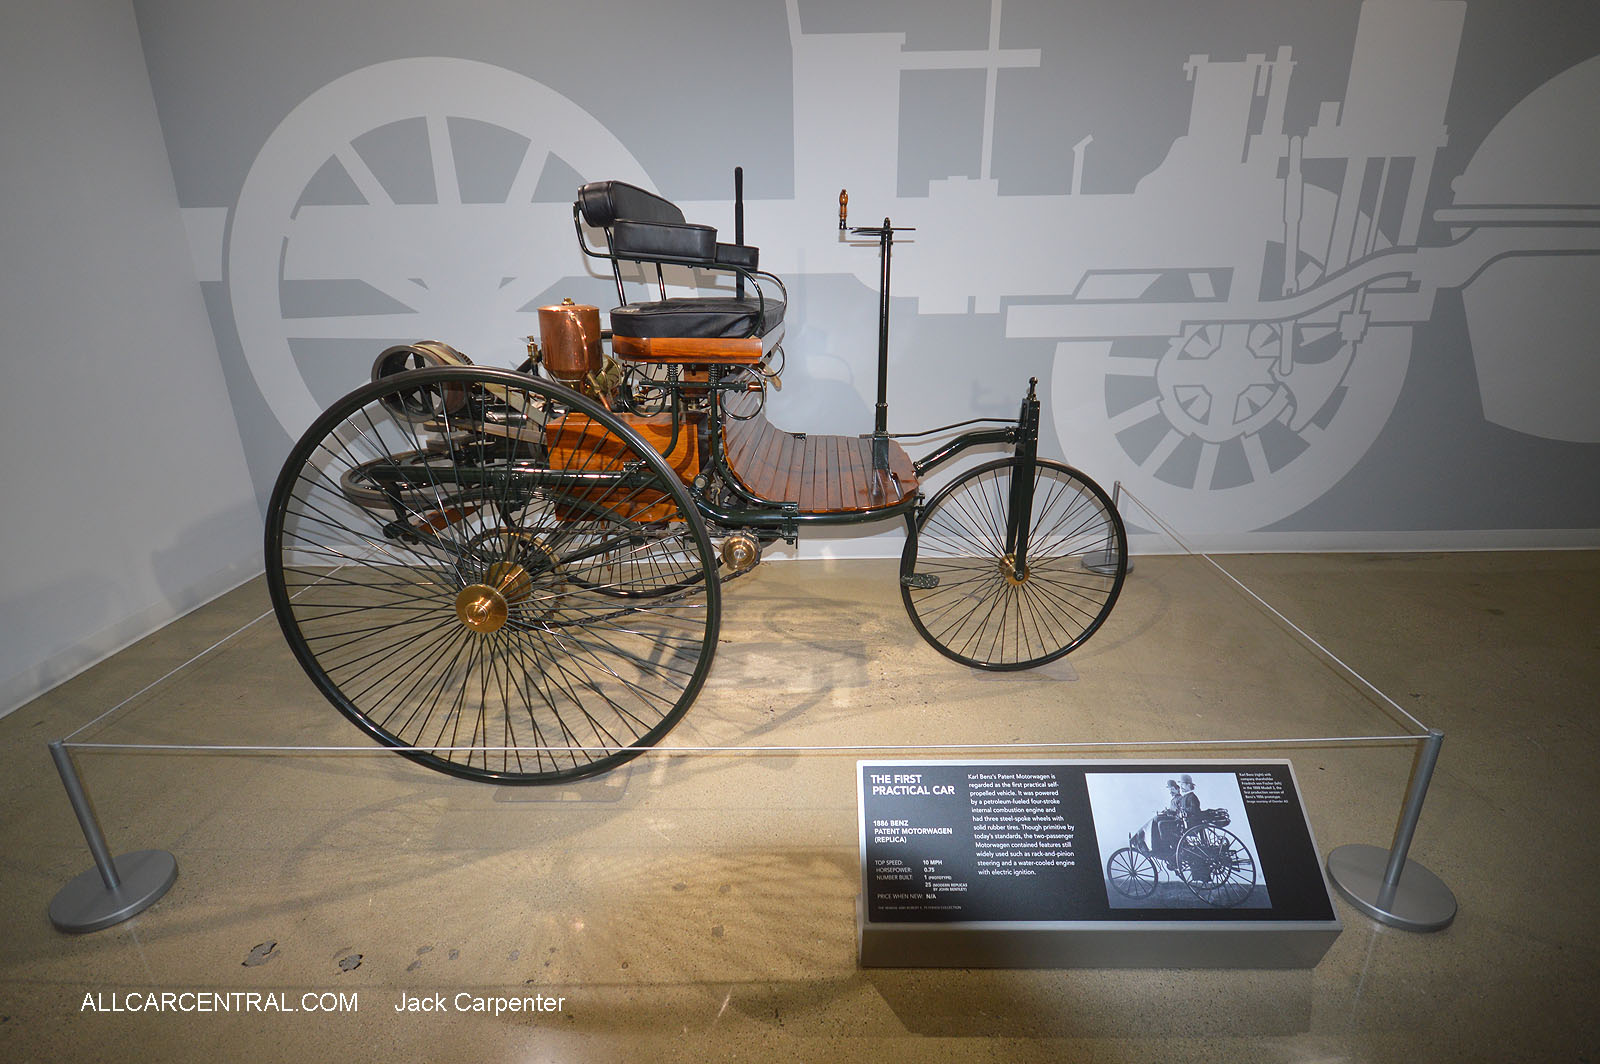   Benz Patent Motorwagen Replica 1886  
Petersen Automotive Museum 2016